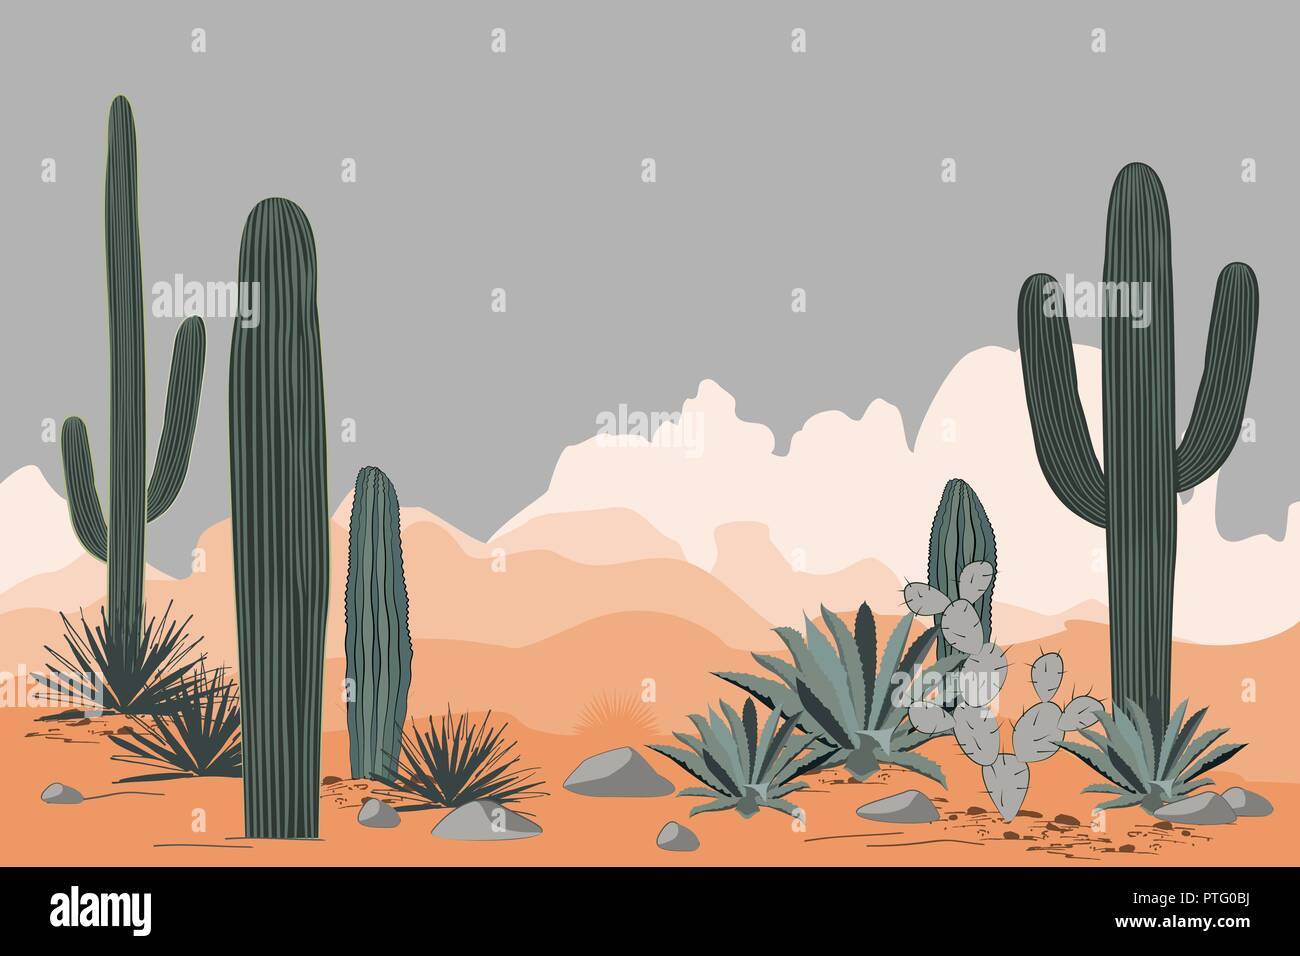 Mexiko Muster mit Opuntia, Agave, und Saguaro Kakteen. Die Berge im Hintergrund. Für text Stock Vektor